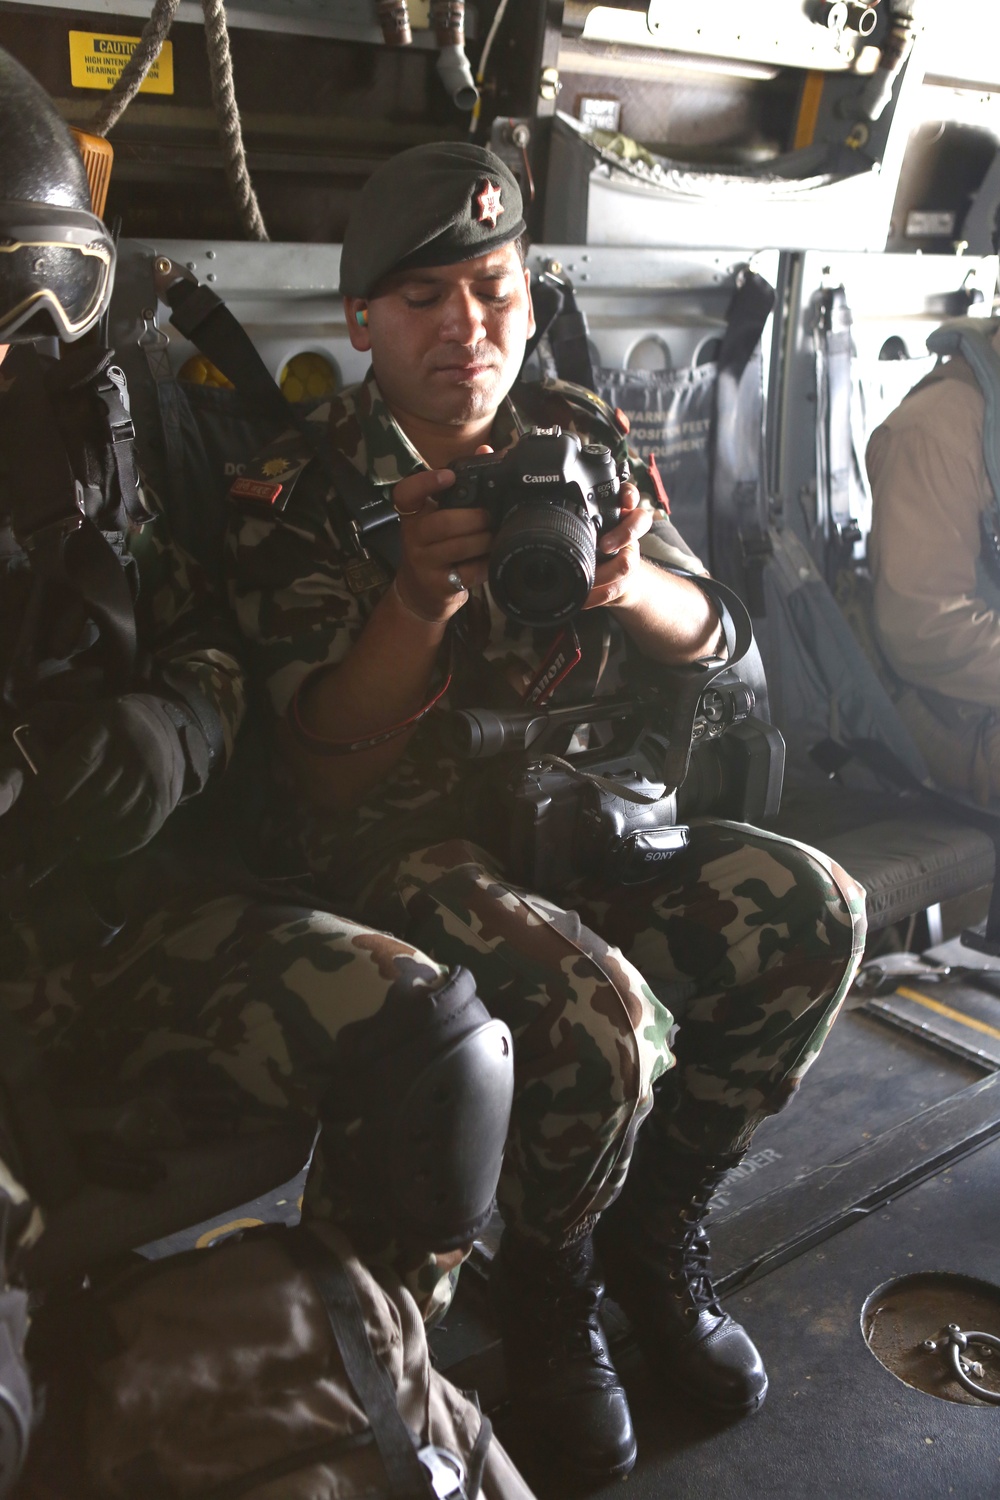 U.S. Marine Ospreys transport Nepalese military, survey earthquake damage